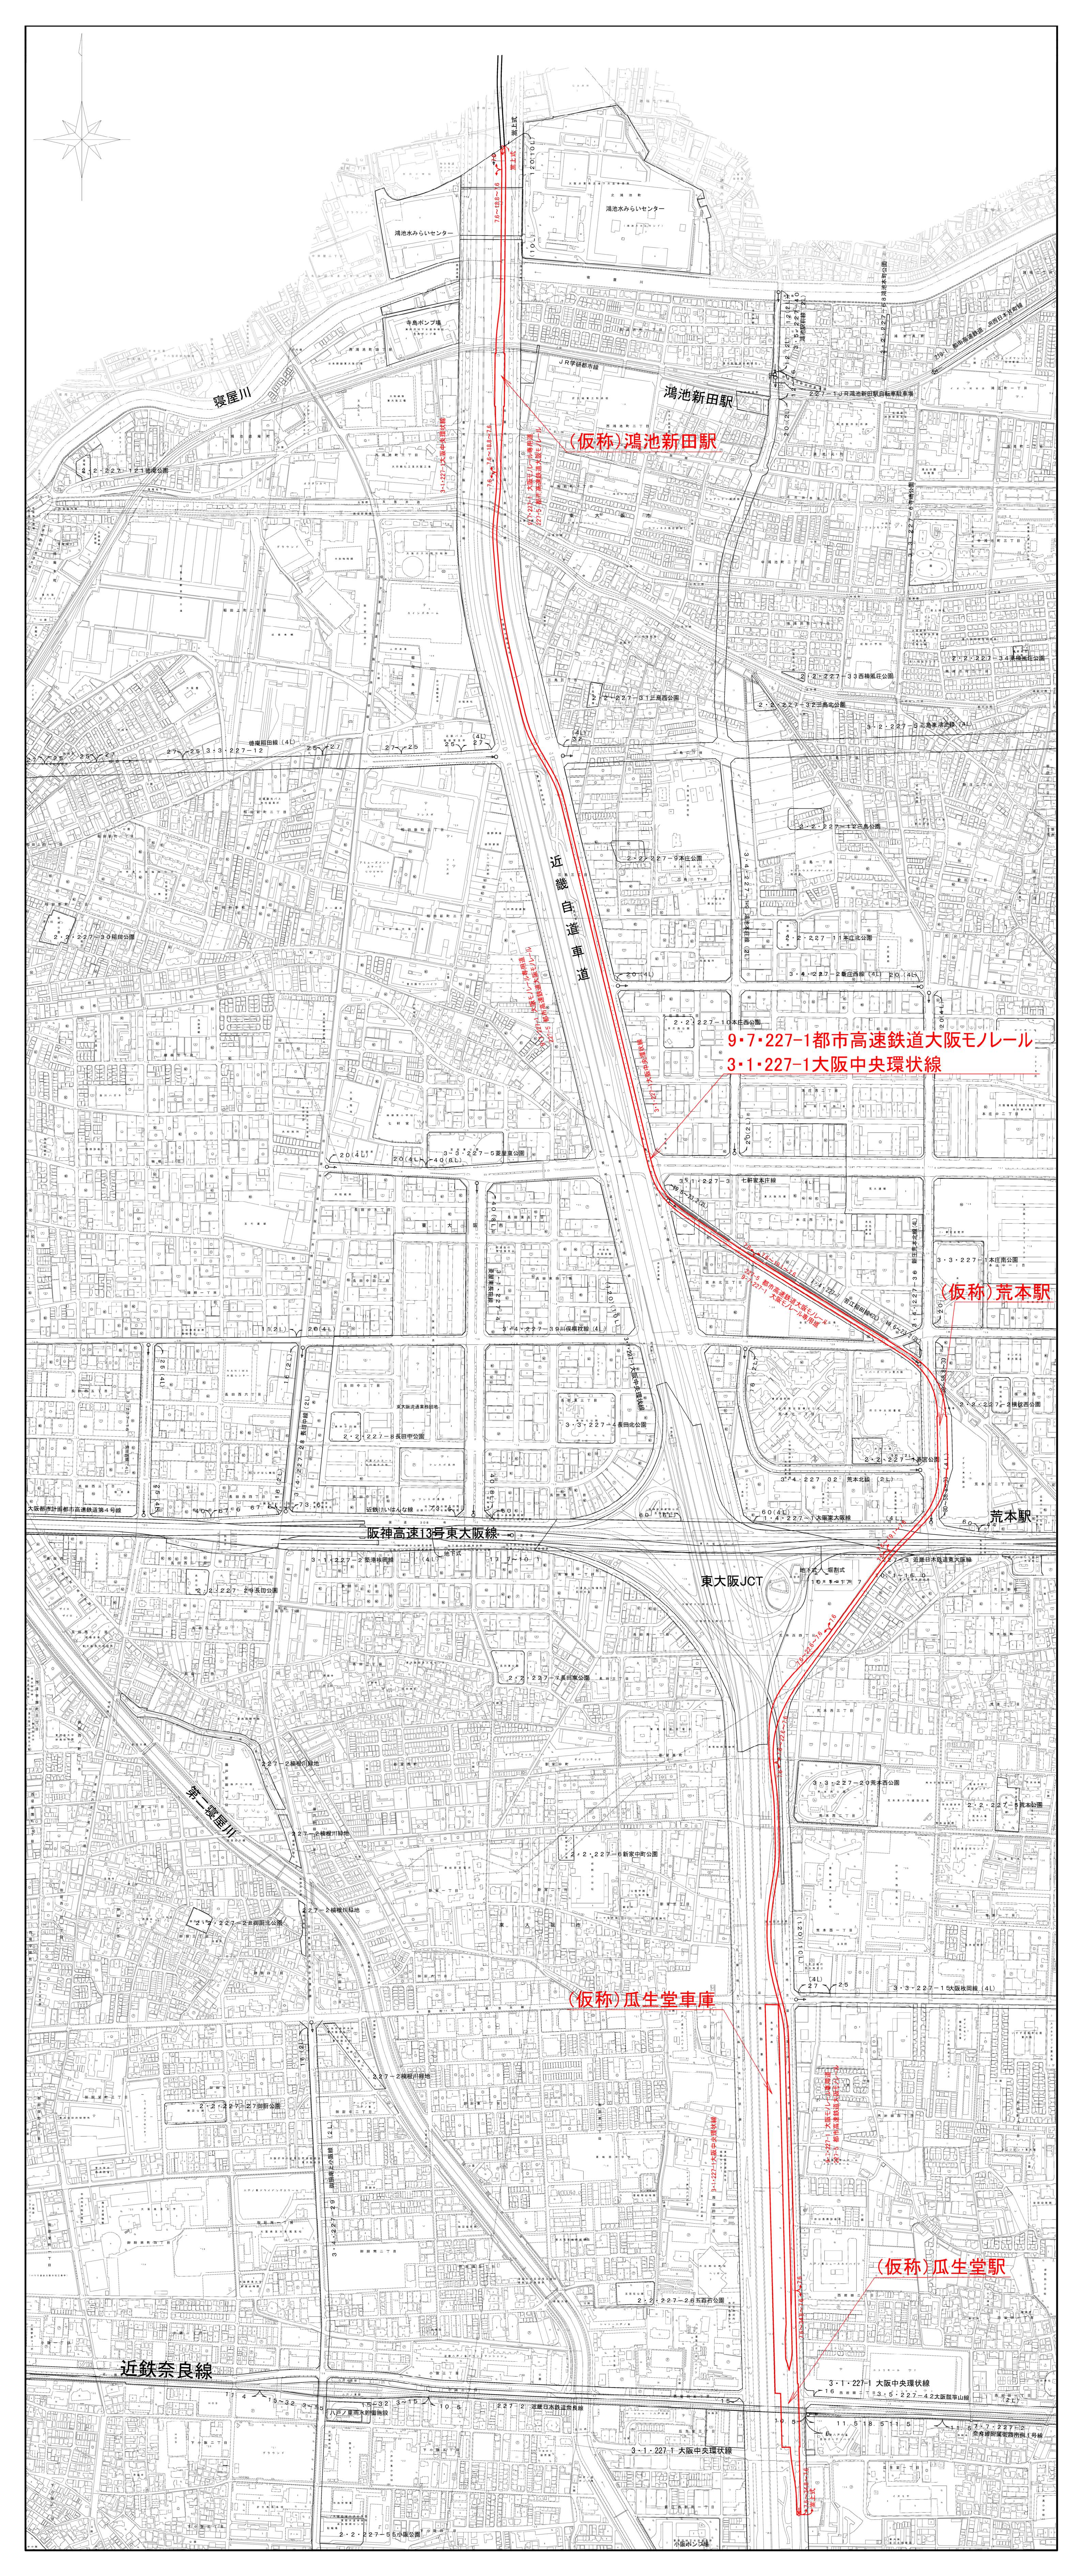 東大阪市域の計画図です。縮尺は２５００分の１です。